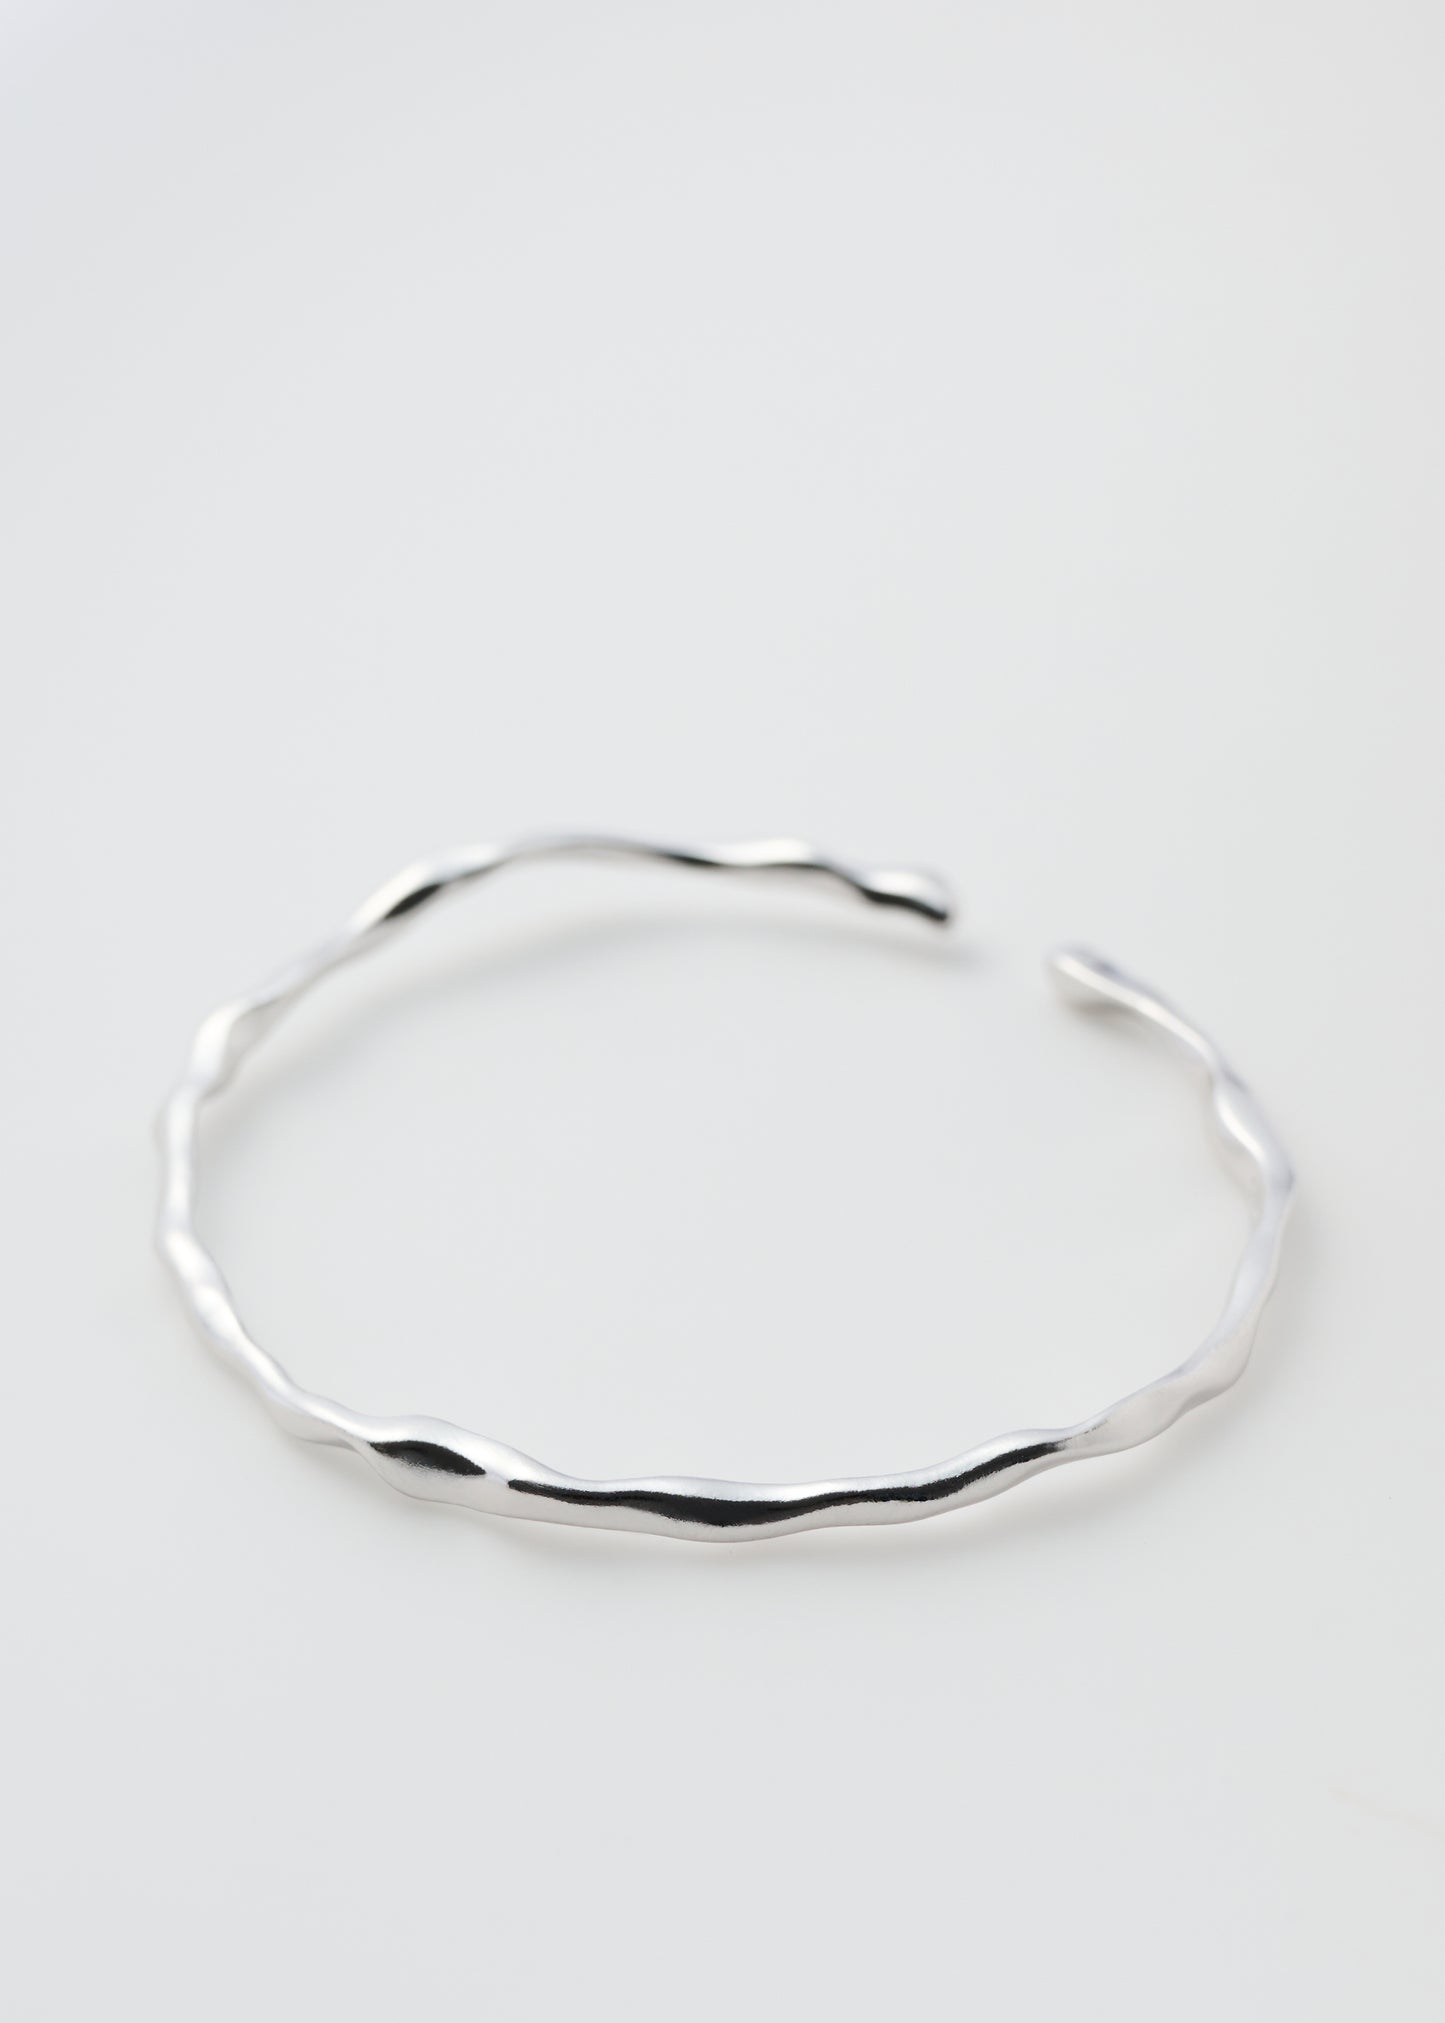 Silver Bangle Drop Bracelet